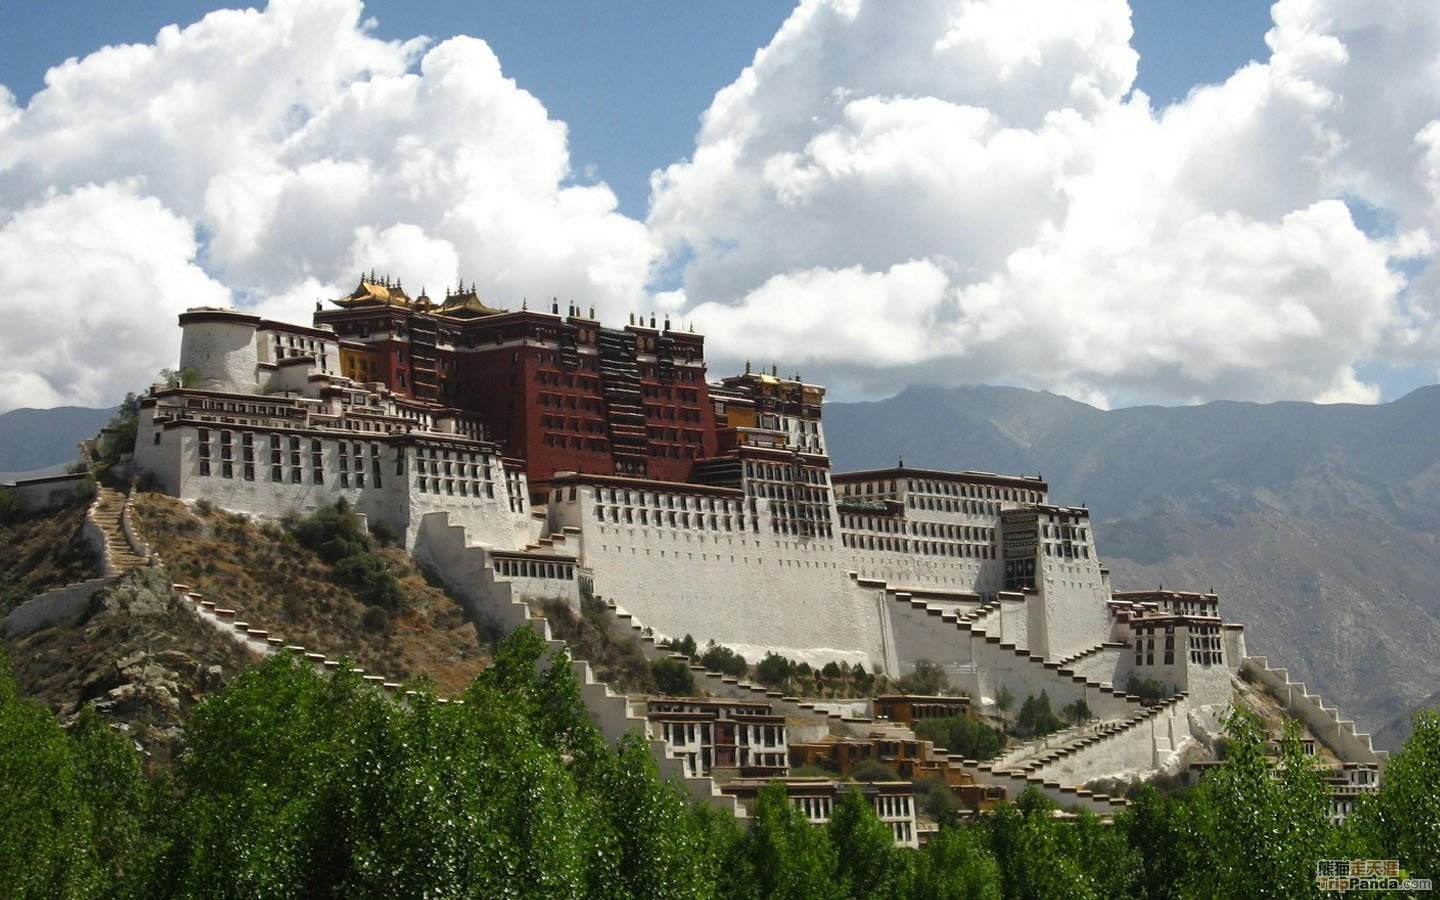 Дворец Потала Тибет Гималаи